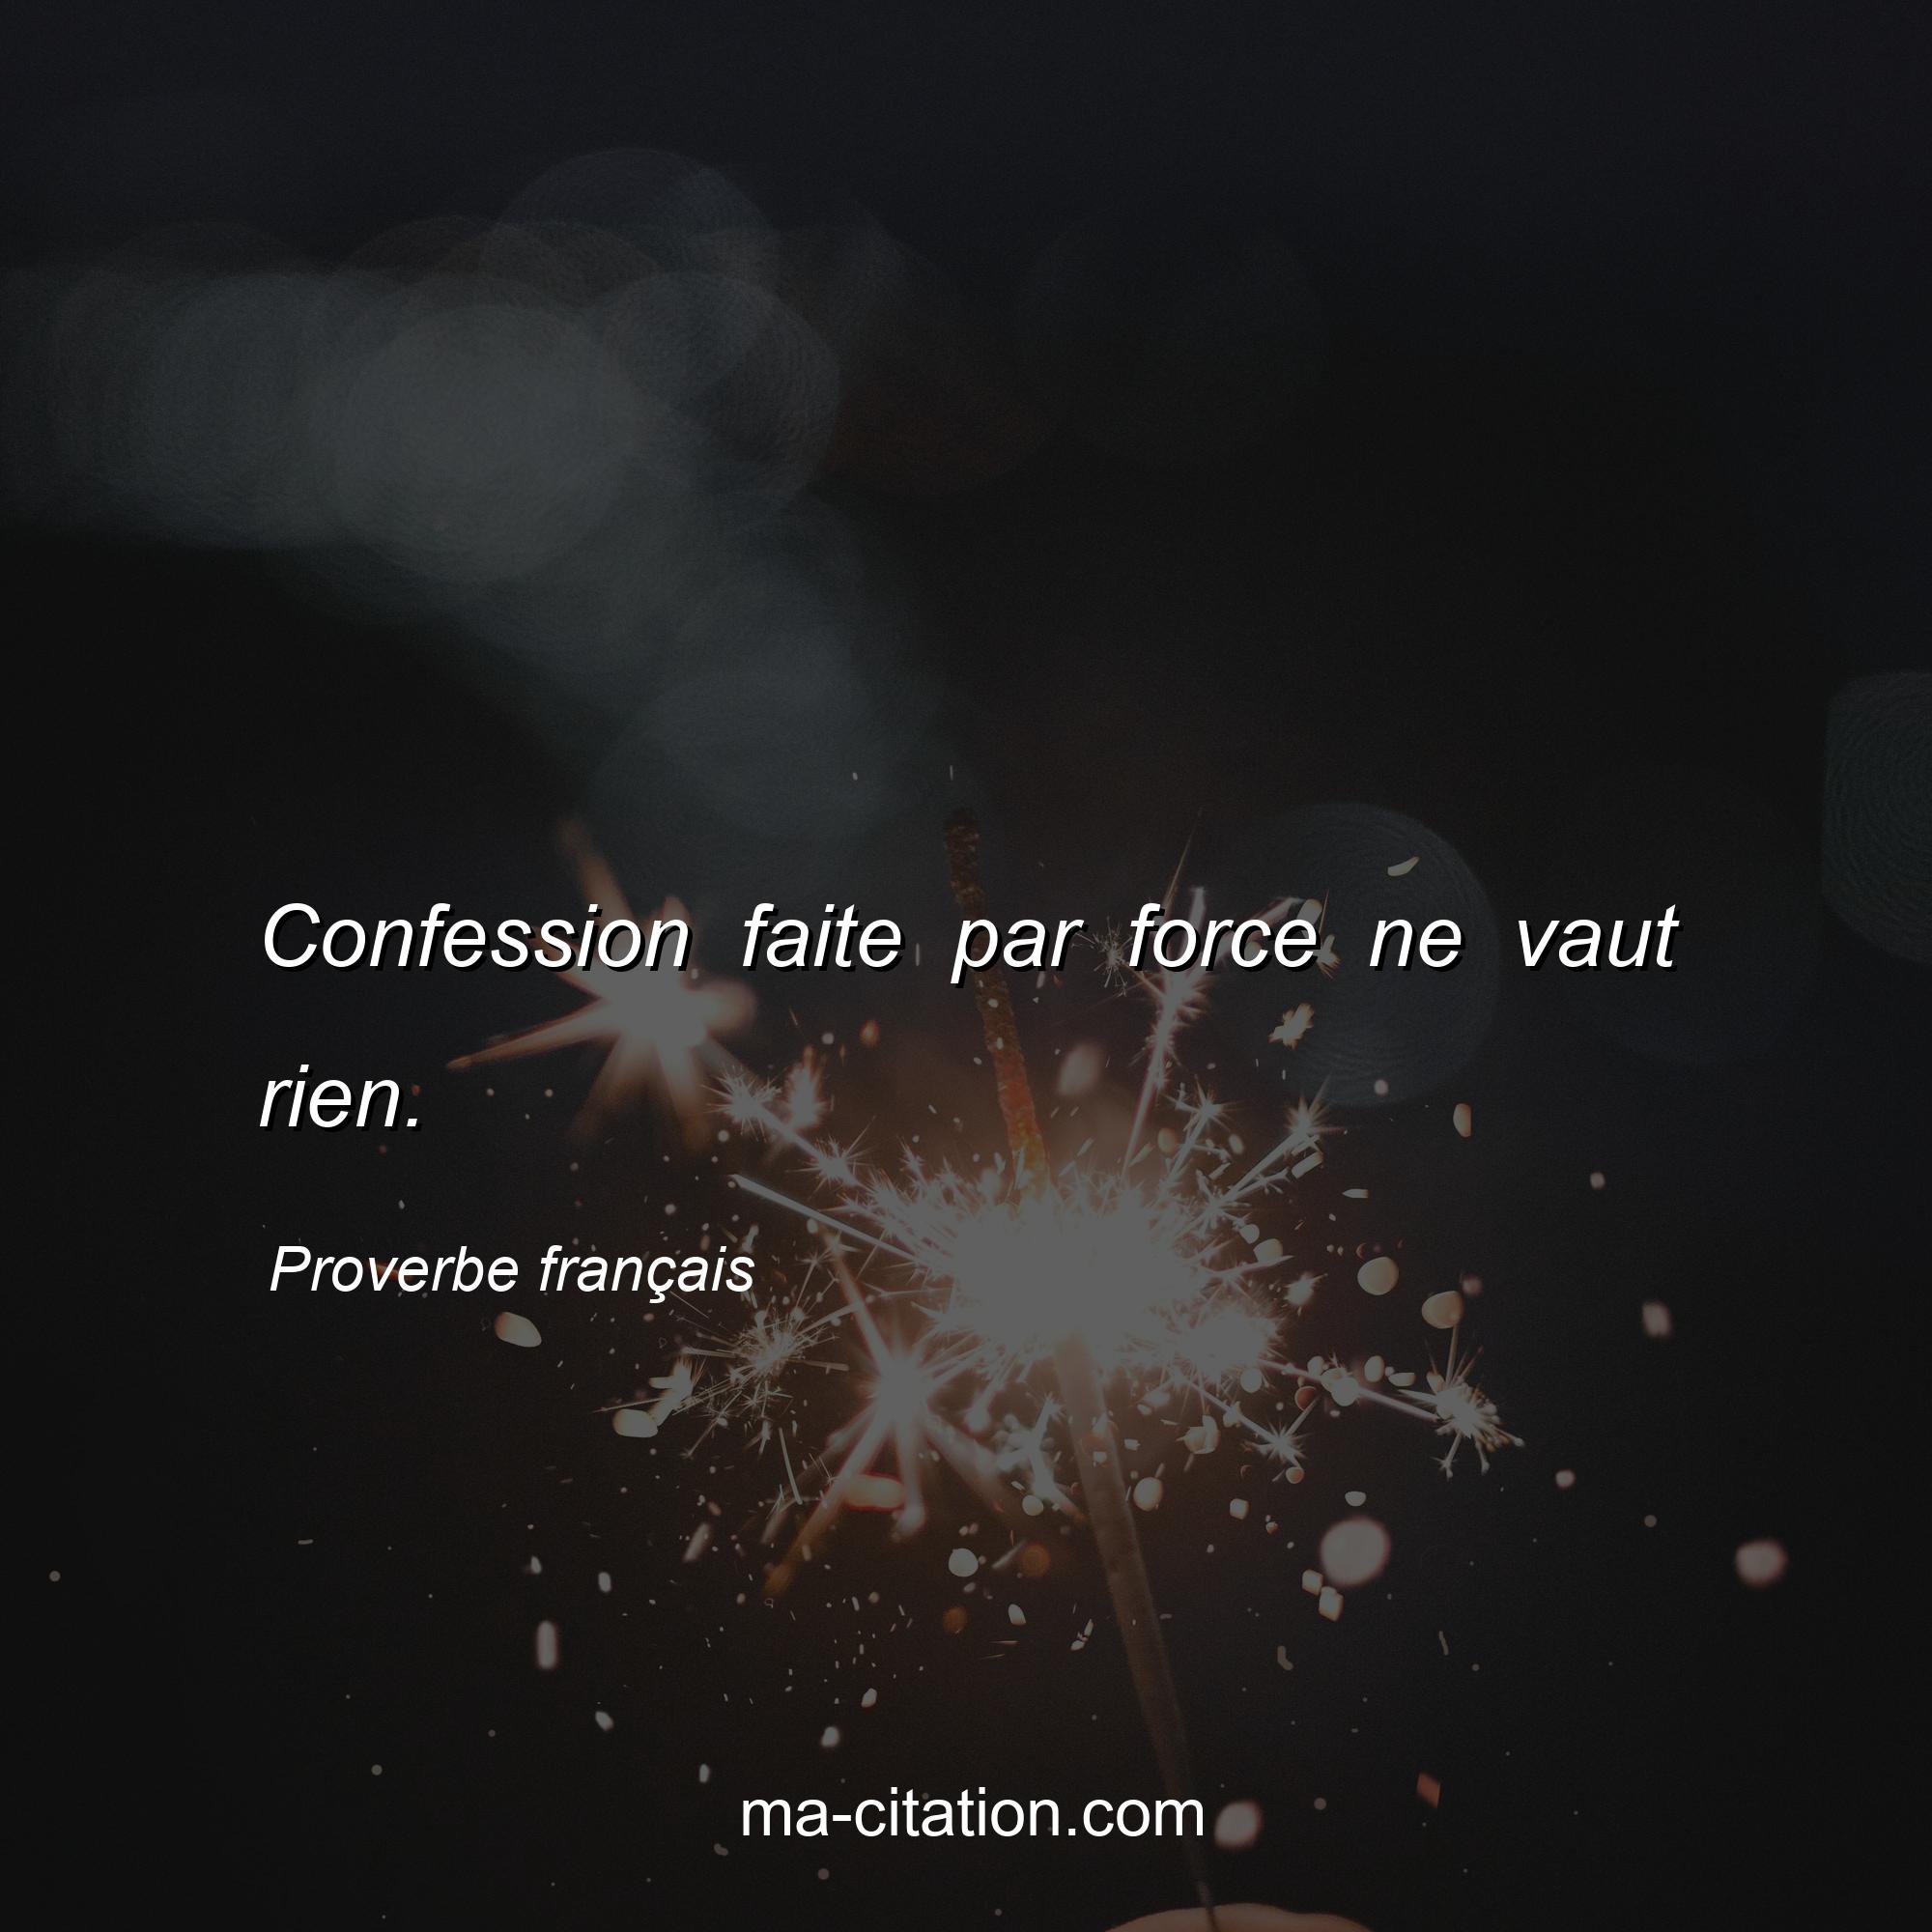 Proverbe français : Confession faite par force ne vaut rien.